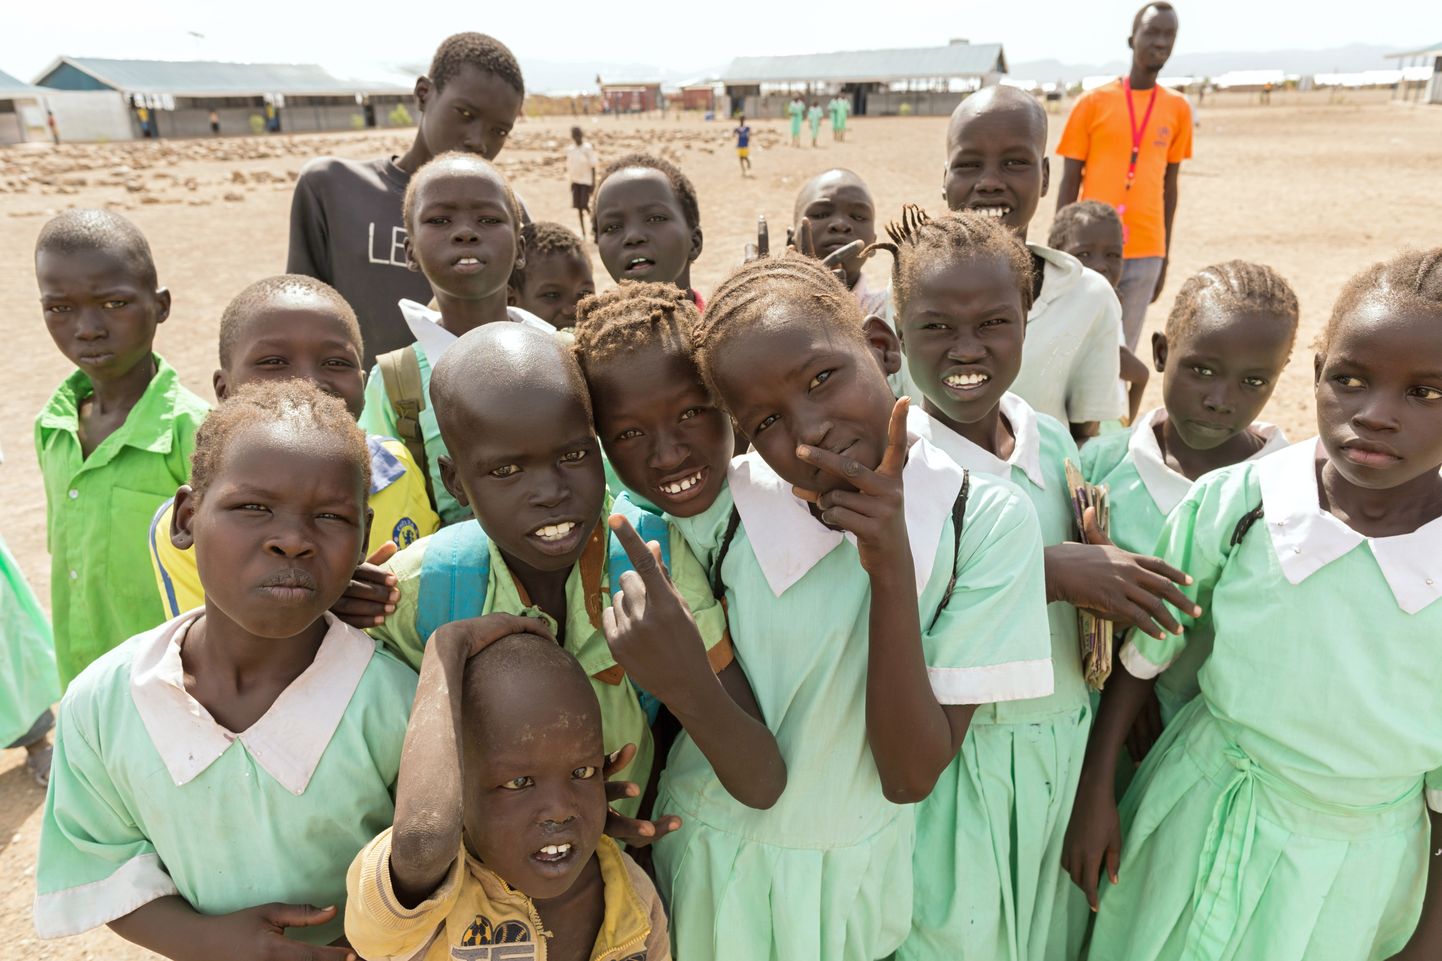 Tüdrukute suguelundite moonutamine on levinud mitmetes Aafrika riikides.